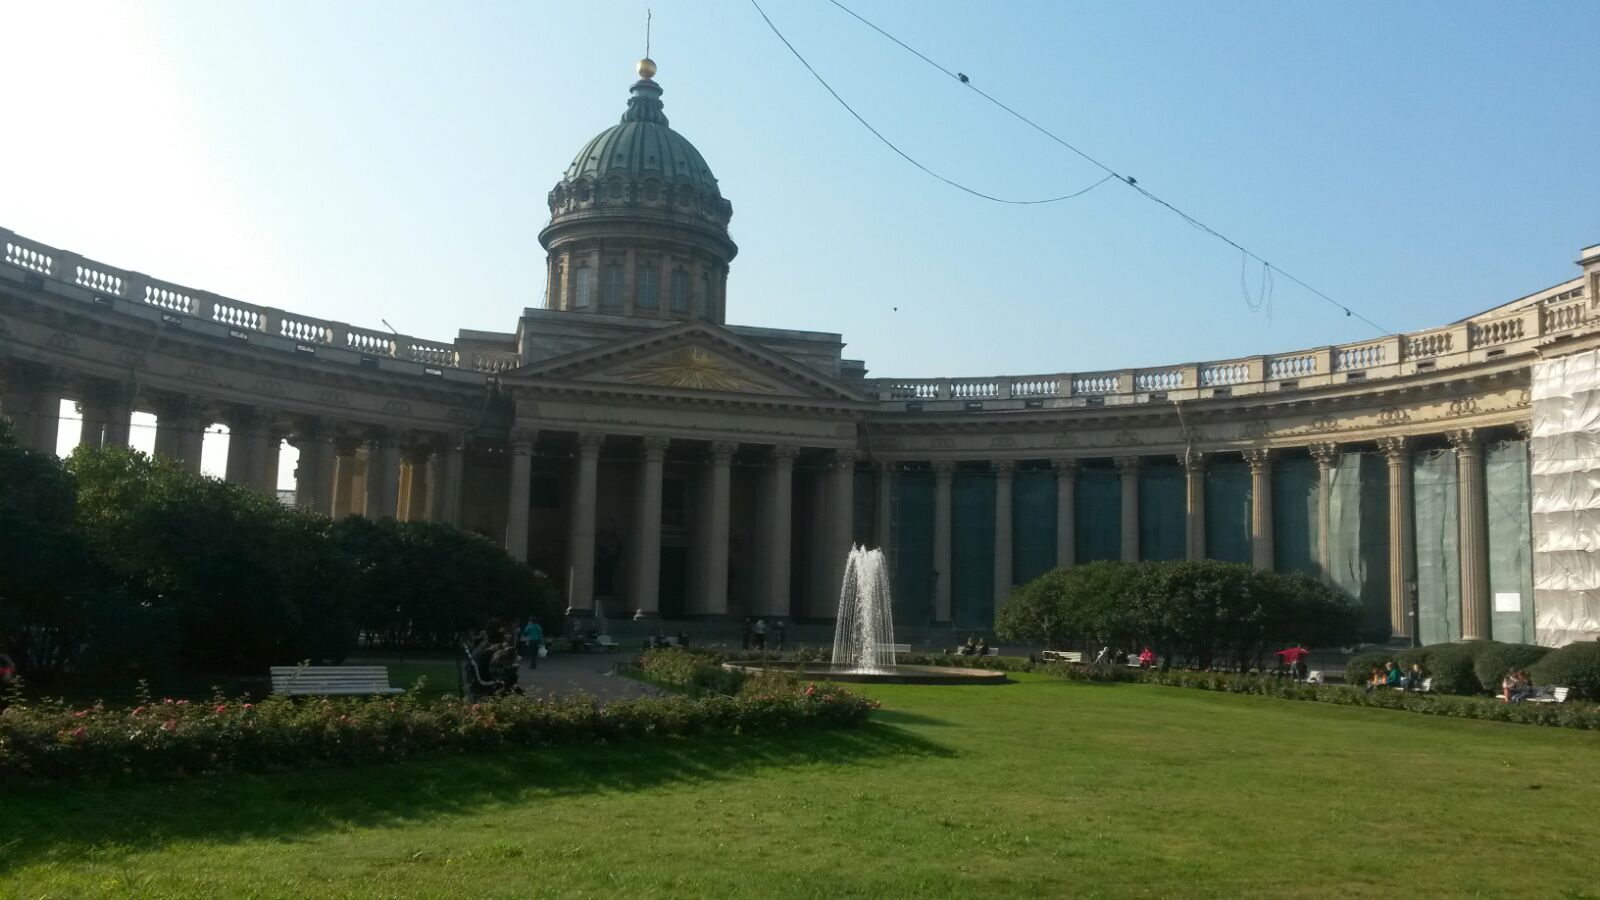 Russisch orthodoxe Kathedrale, ebenfalls eine bekannte Sehenswürdikteit in St. Petersburg